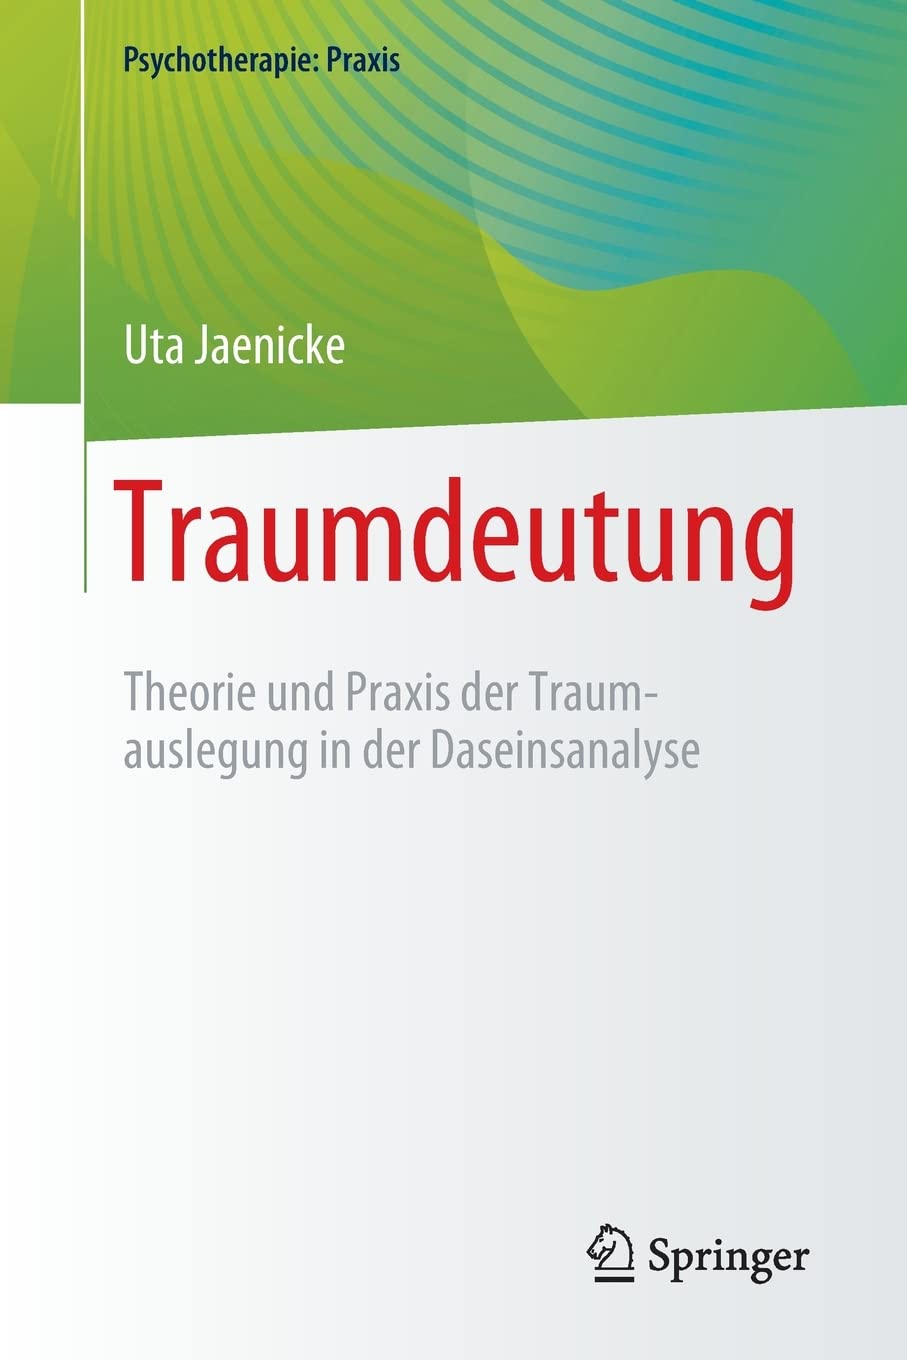 Traumdeutung: Theorie und Praxis der Traumauslegung in der Daseinsanalyse (Psychotherapie: Praxis) (German Edition)  by Uta Jaenicke